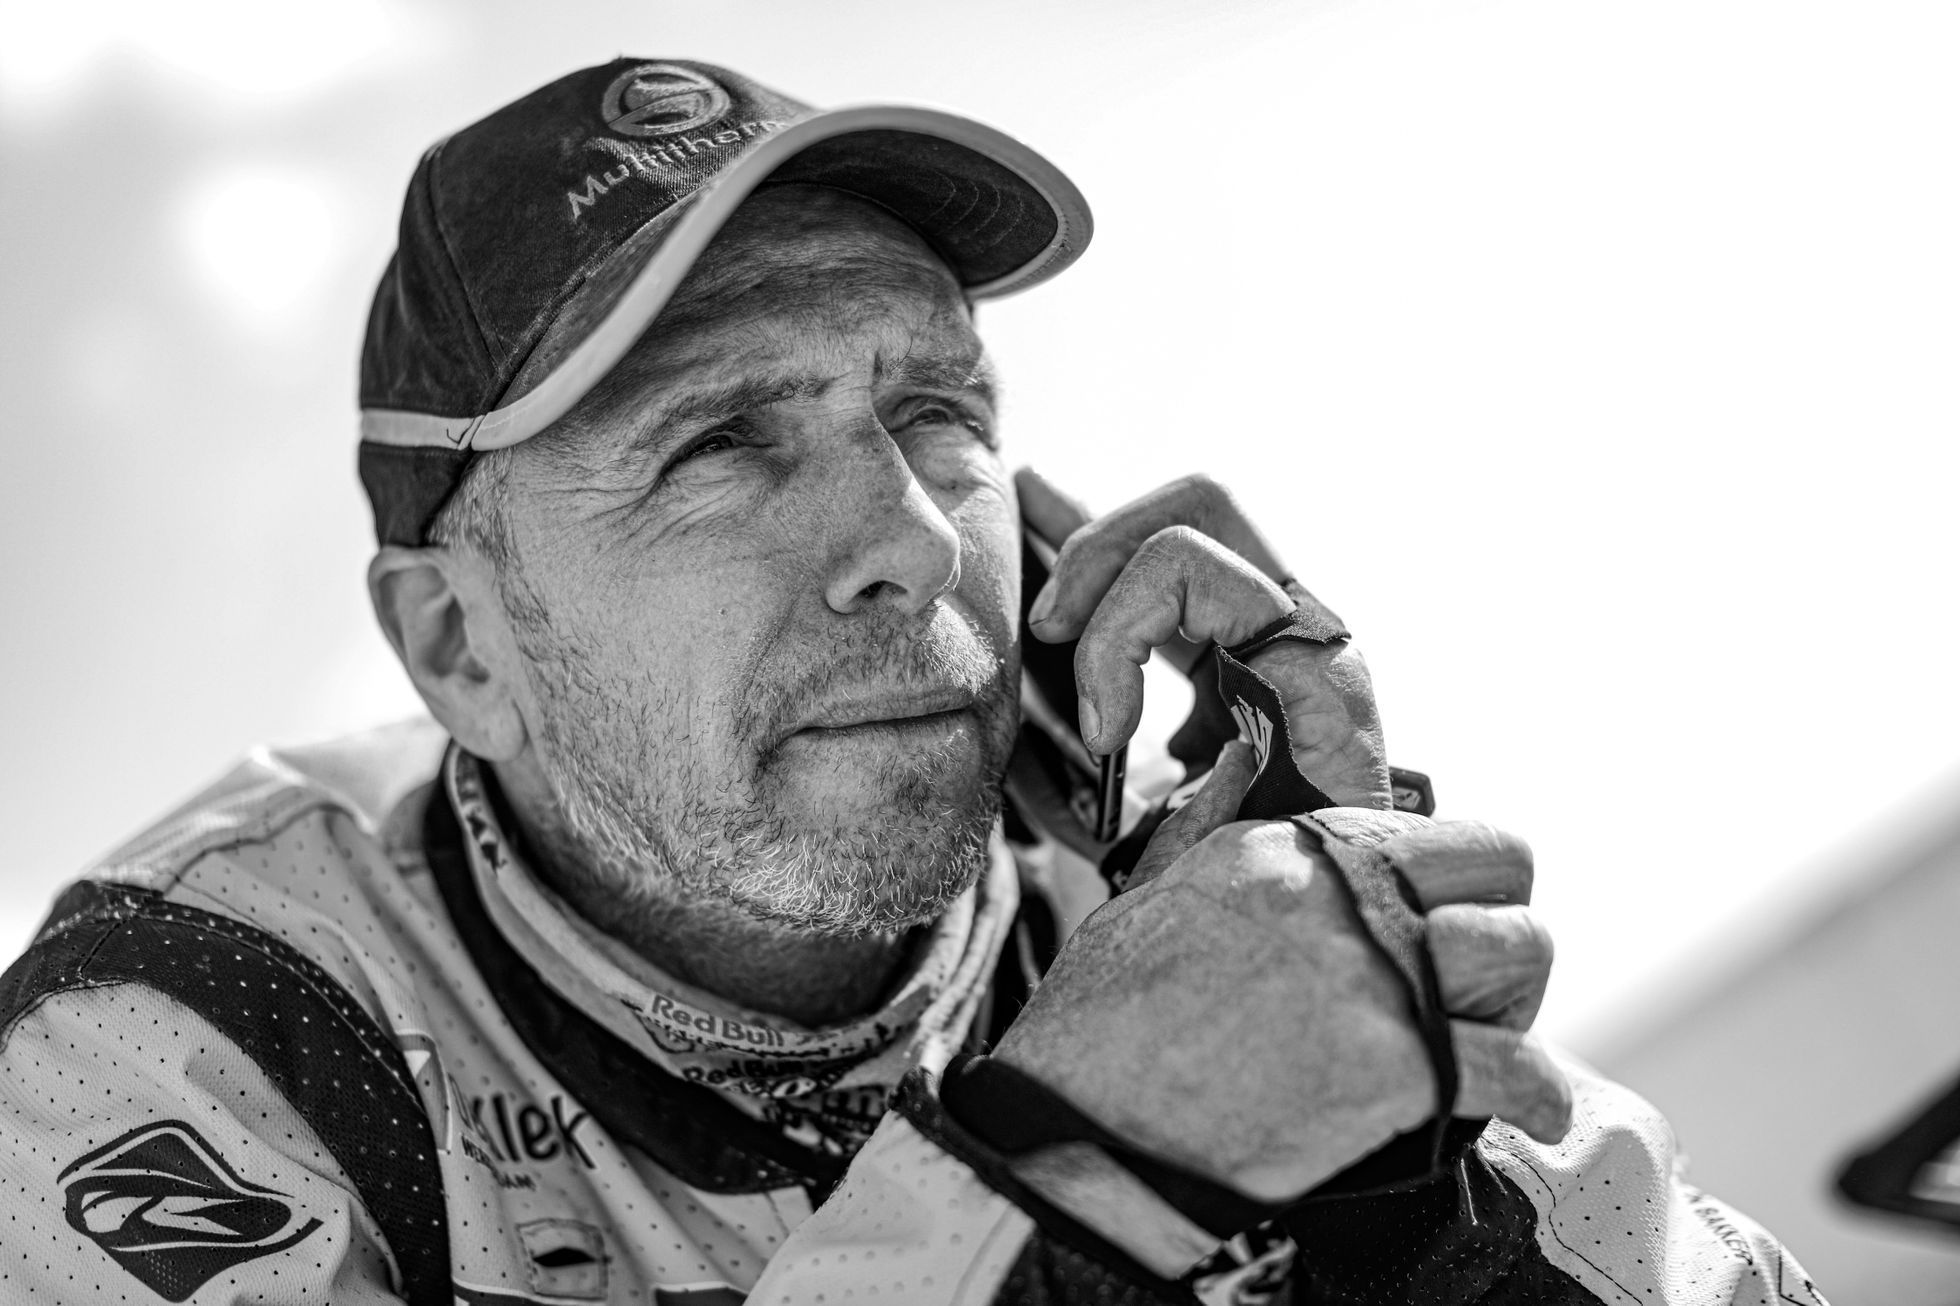 Motocyklista Edwin Straver na Rallye Dakar 2020